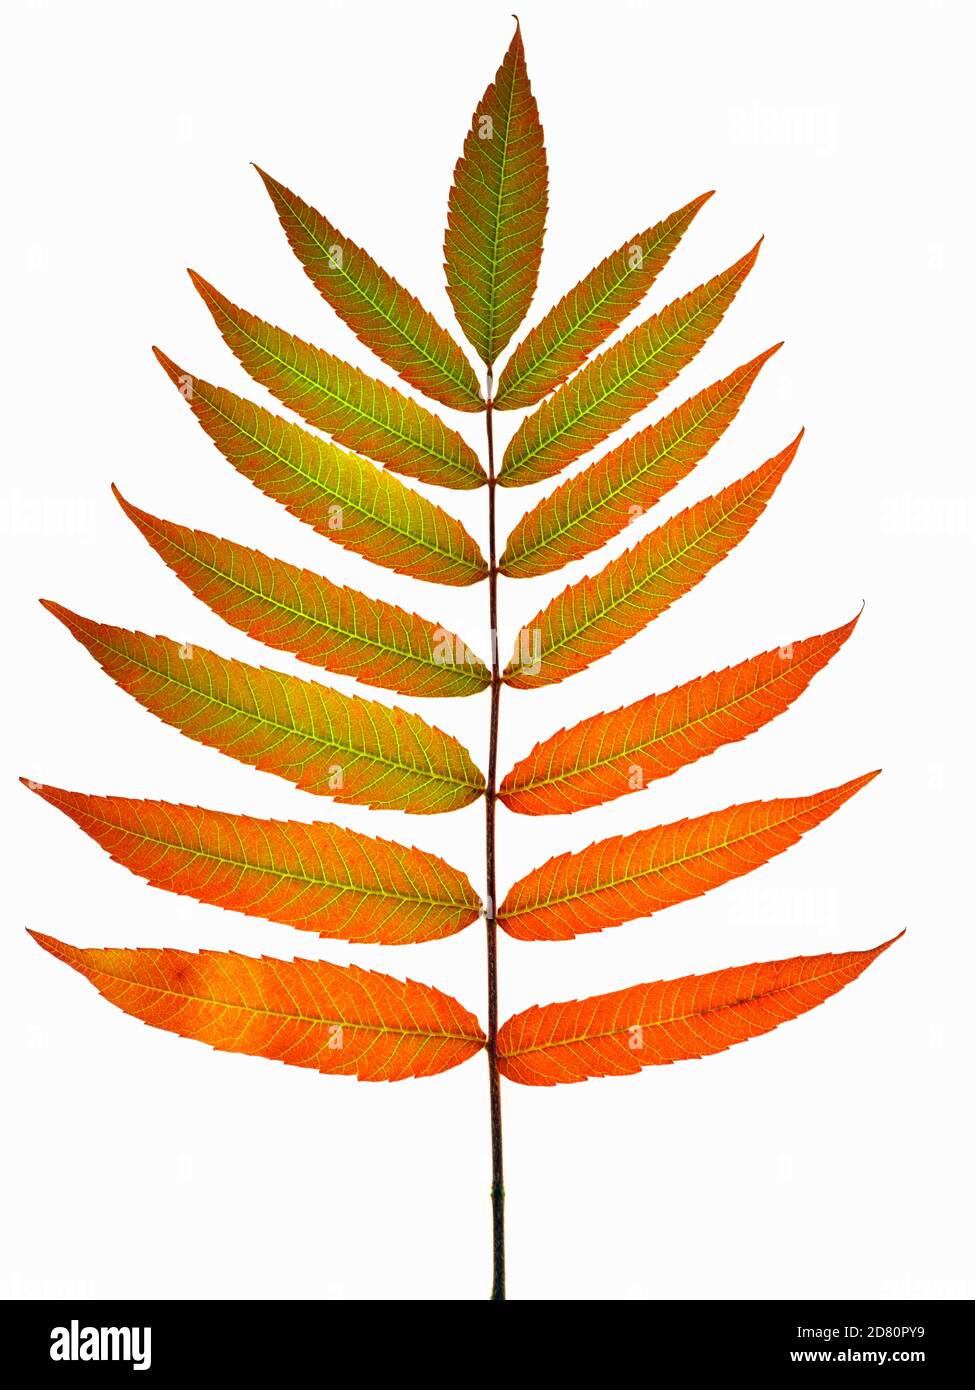 Gros plan d'une feuille de Sumac changeant de couleur en automne. Le genre Rhus, un bon exemple de changement de couleurs en raison de la diminution des heures de jour. Banque D'Images